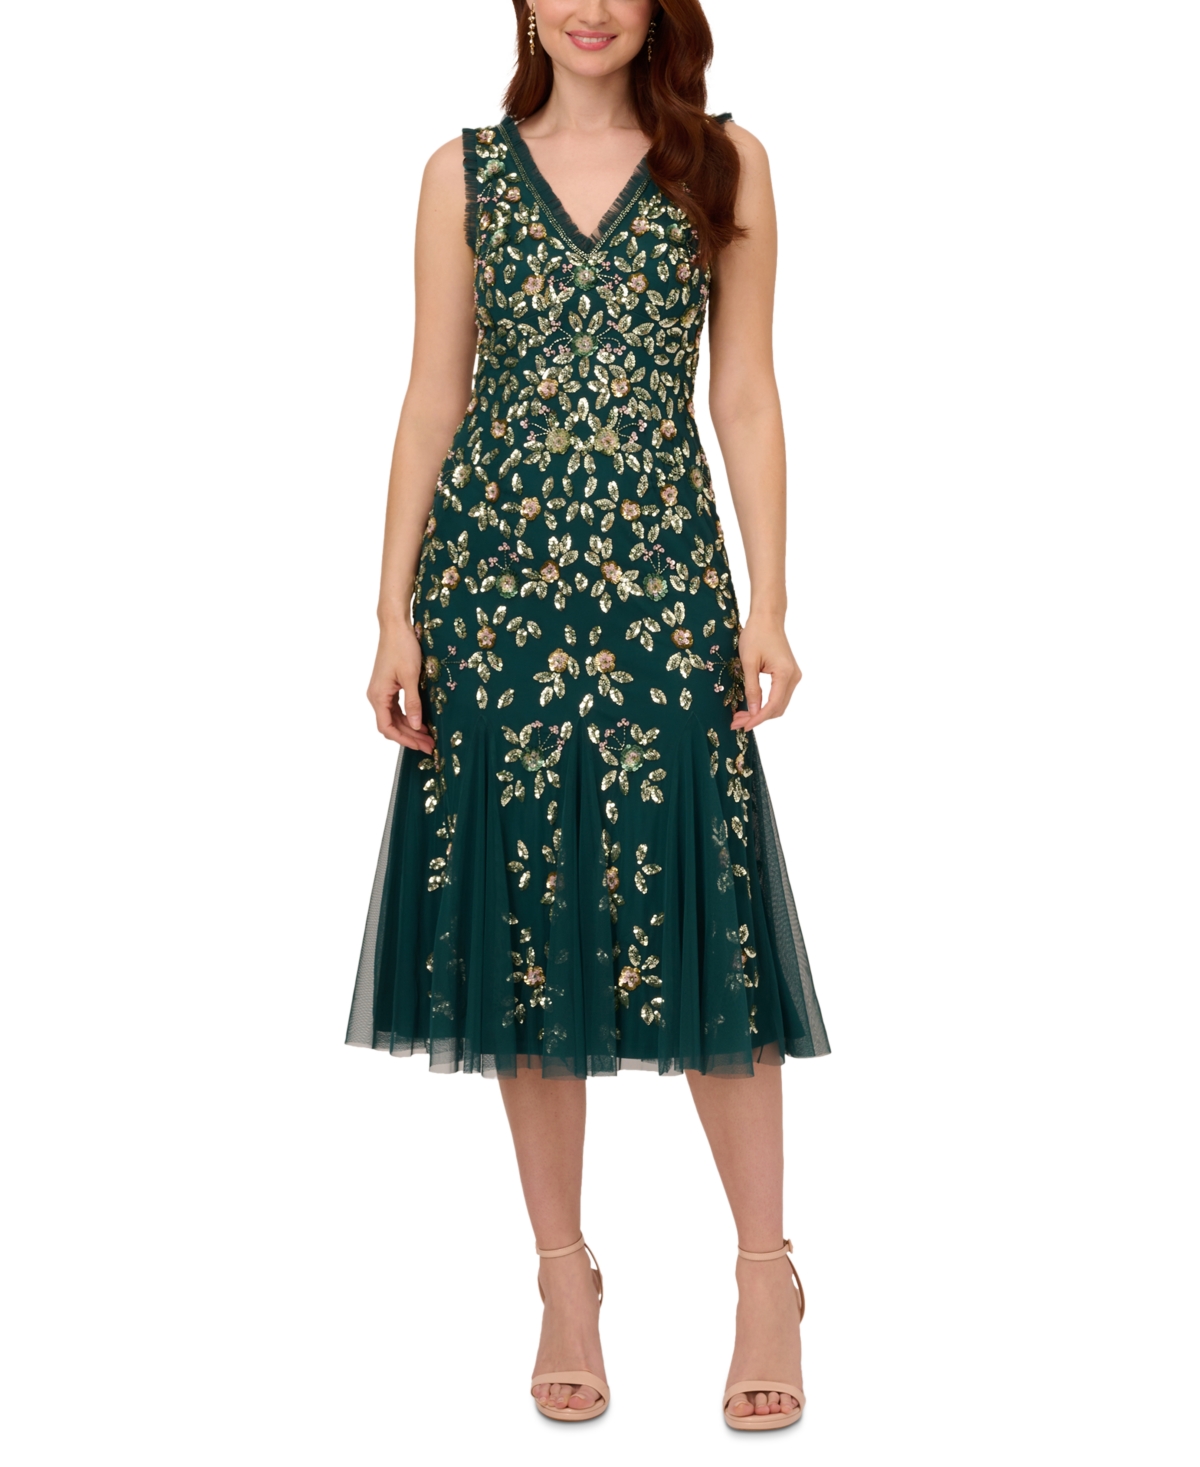 Flapper Dresses, Quality 1920s Flapper Dress Adrianna Papell Womens Embellished Ruffled Godet Dress - Gem Green $299.00 AT vintagedancer.com